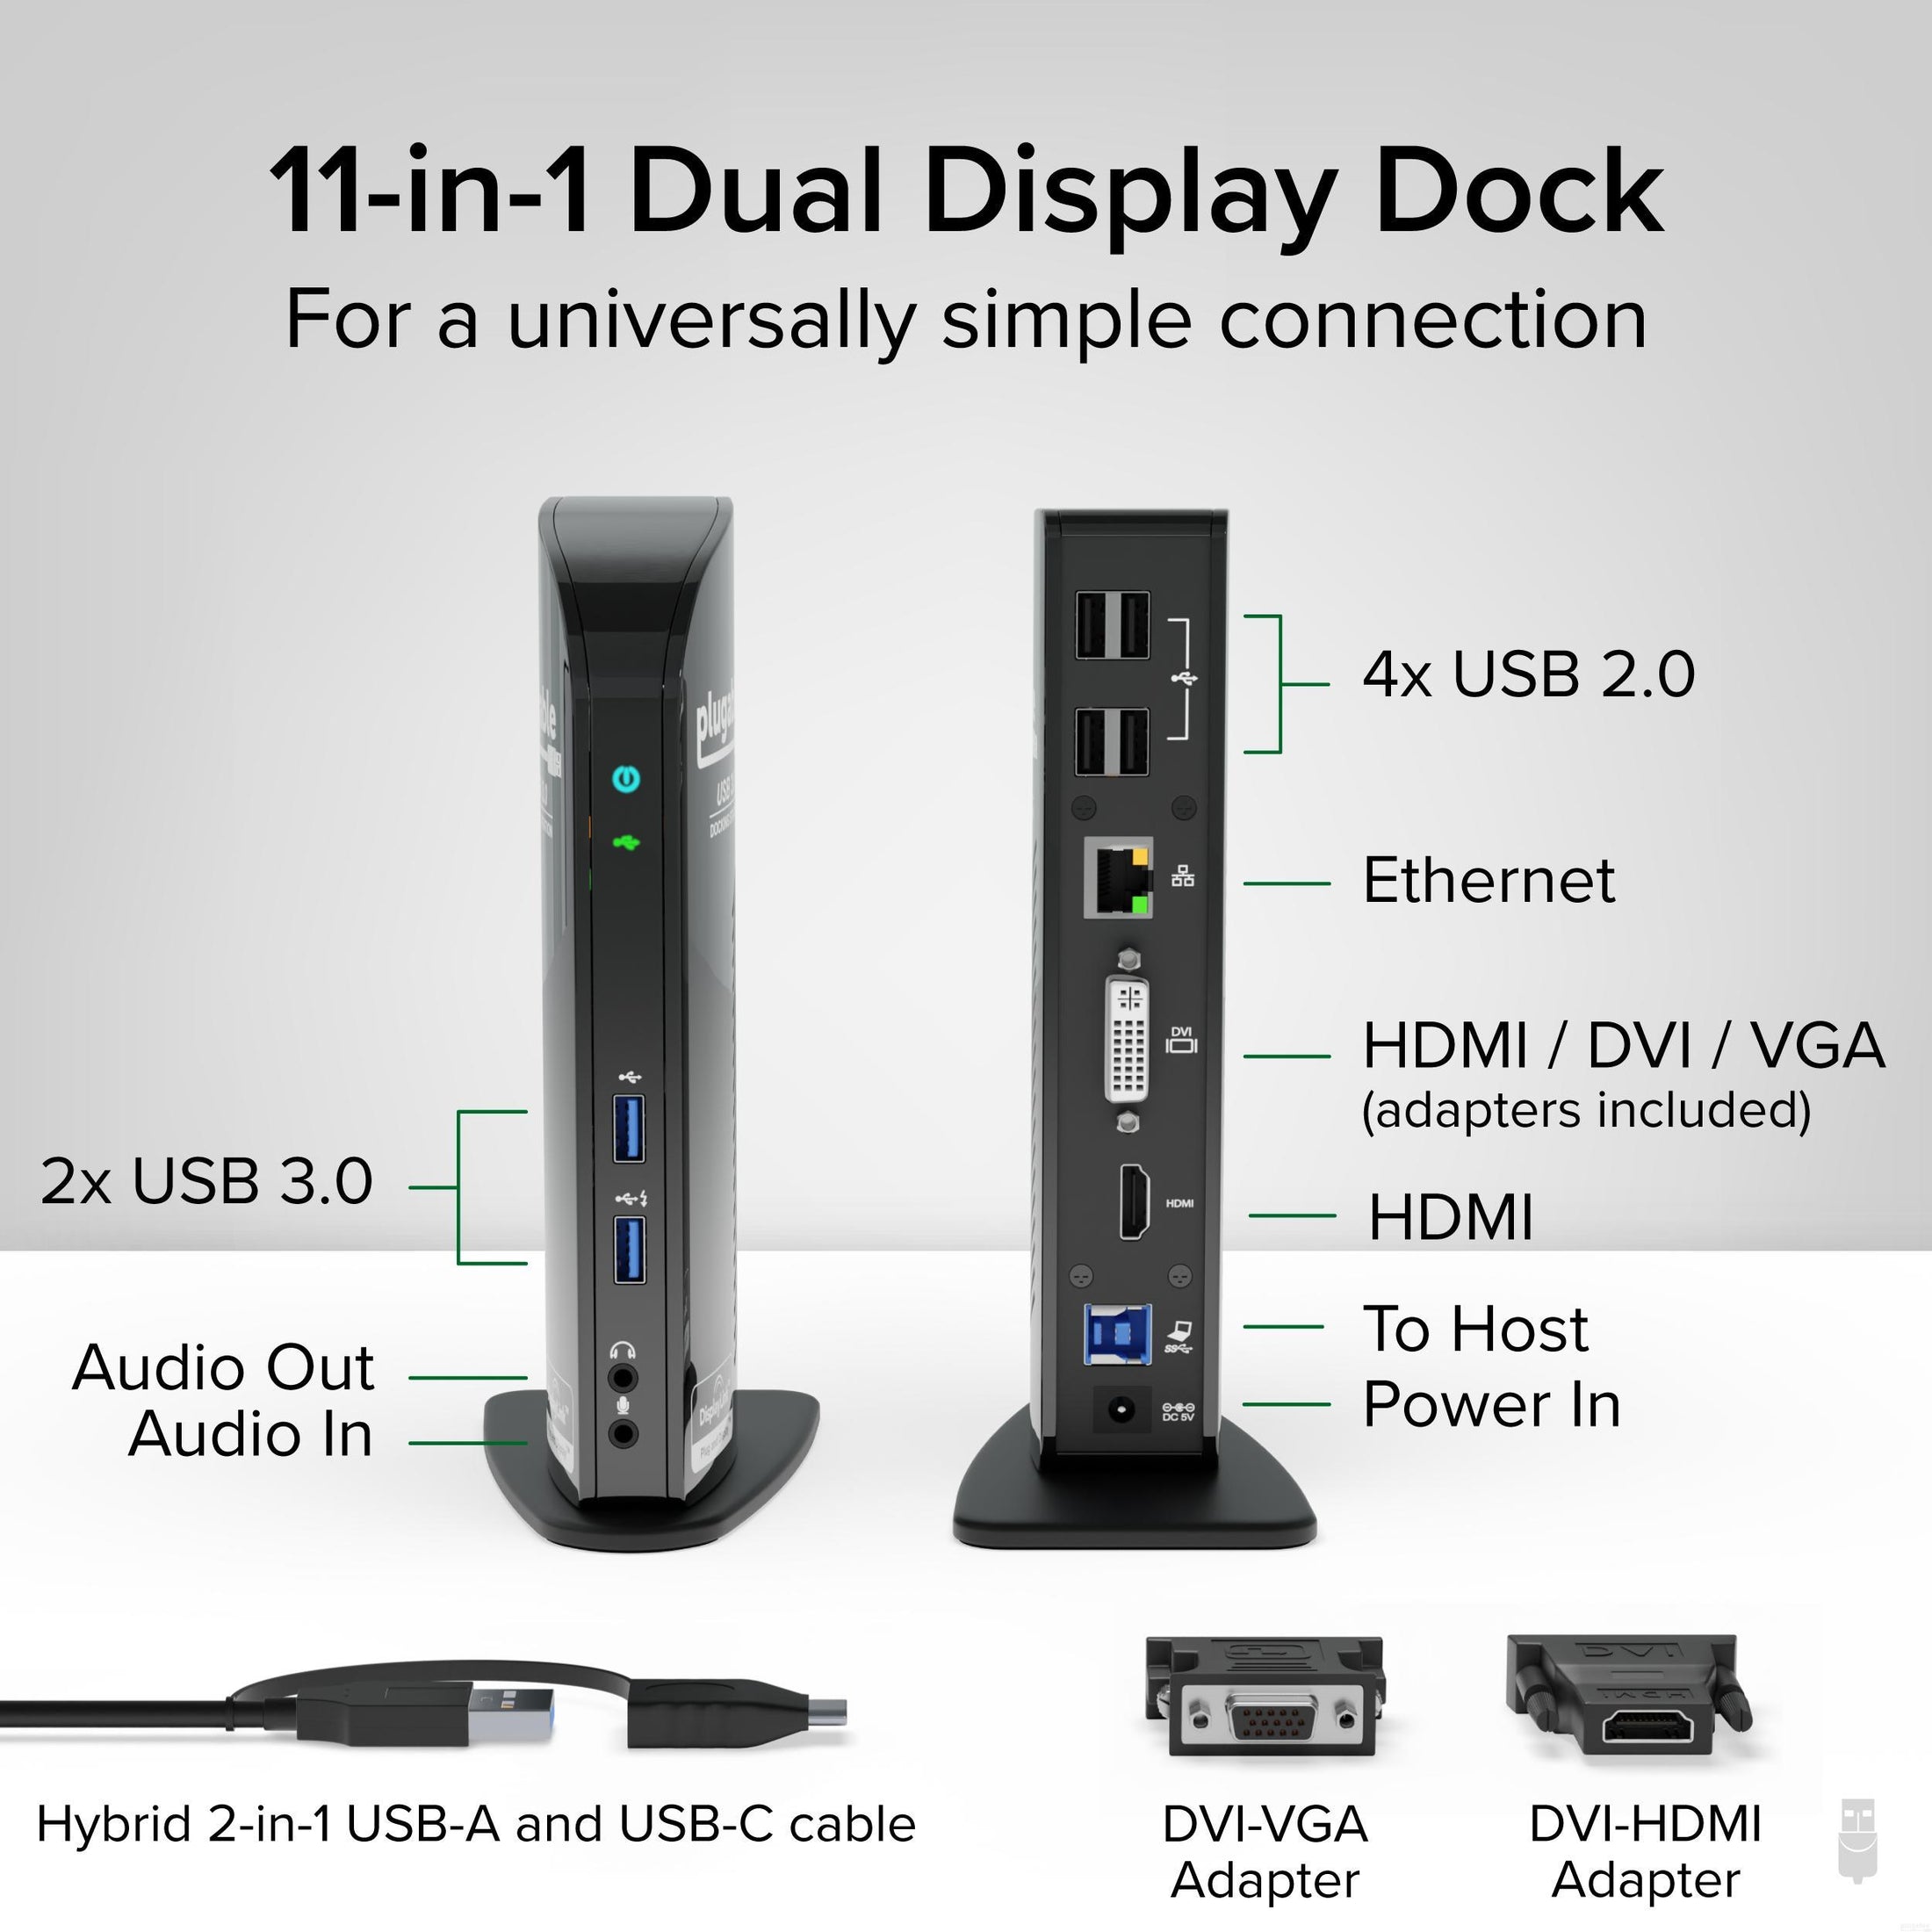 Adaptador USB a HDMI para monitor Windows 11/10/8, convertidor HDMI USB 3.0  para laptop, adaptador de cable HDMI USB múltiples monitores para PC de